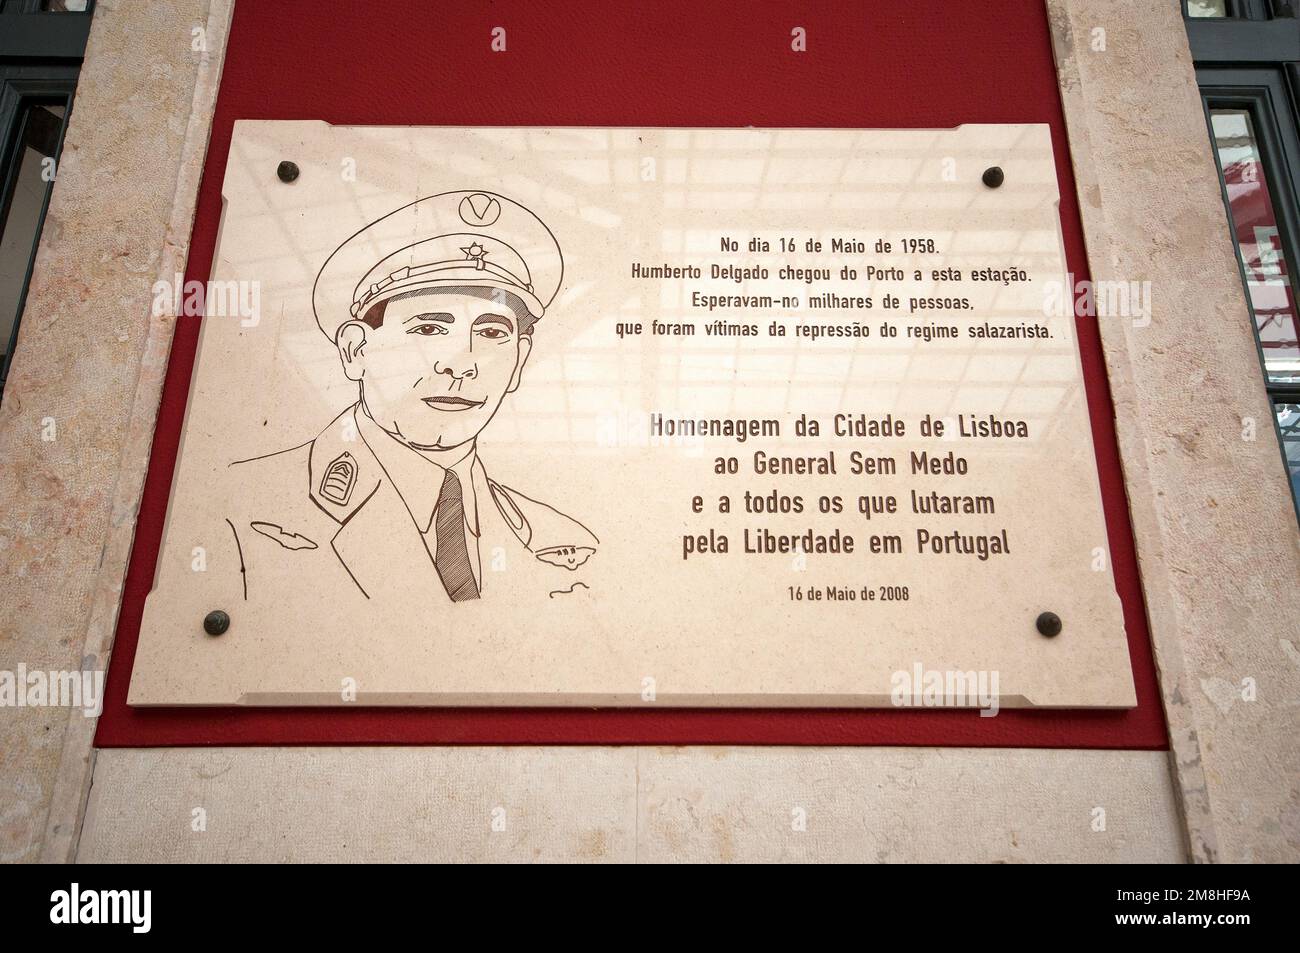 Commemorative plaque of the general and politician Humberto Delgado (1906-1965) in Santa Apolonia train station, Lisbon, Portugal Stock Photo